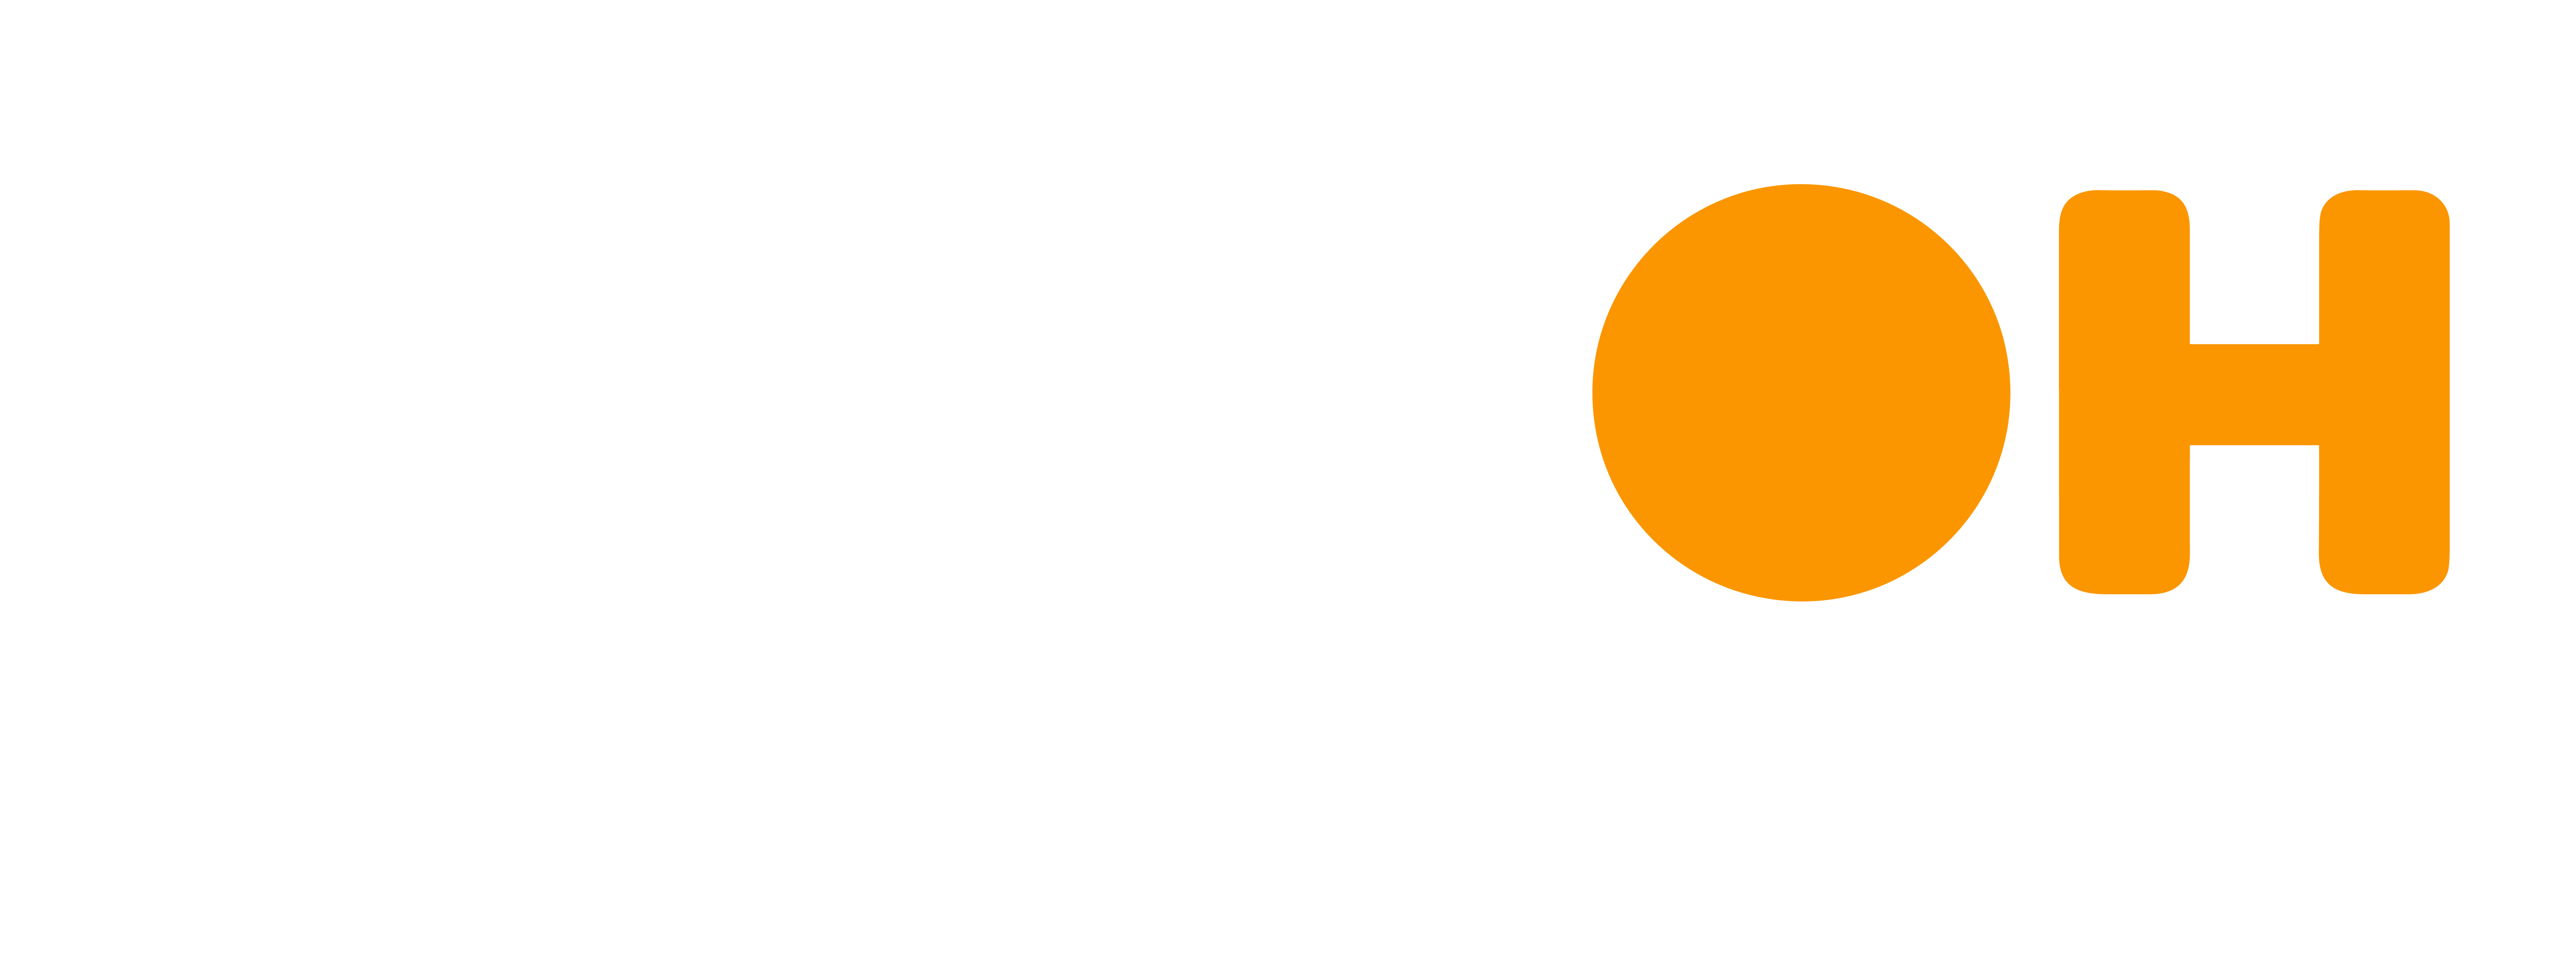 NIROOH - Unbox the DOOH